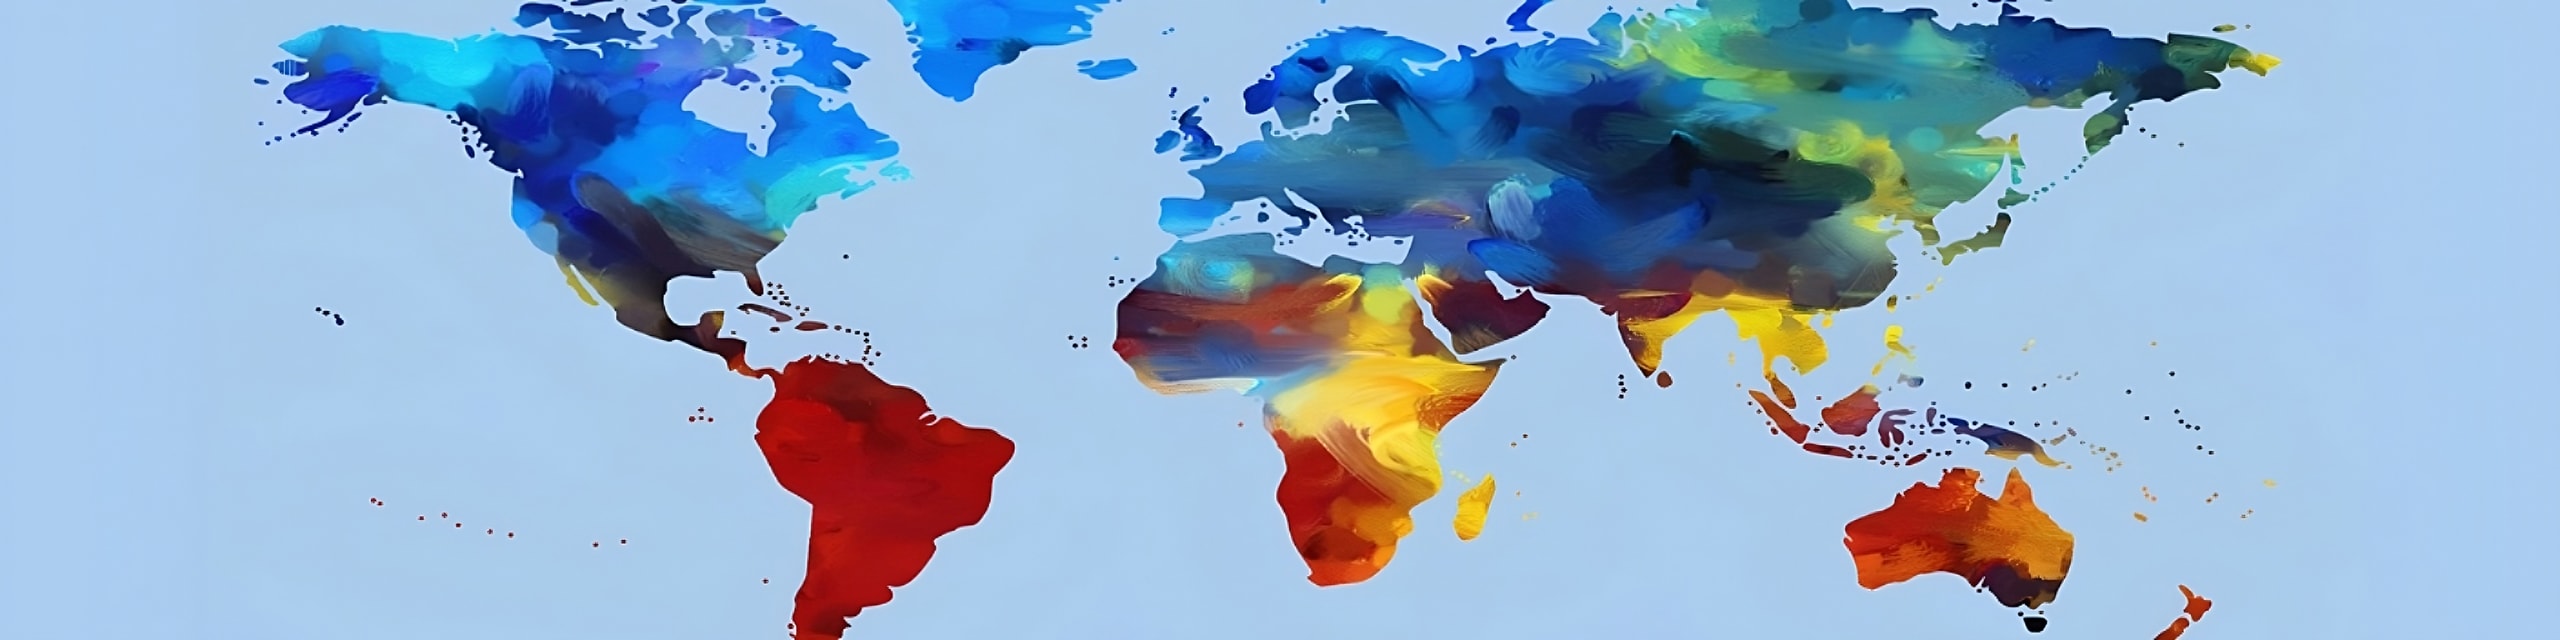 Colorida y artística representación de un mapamundi